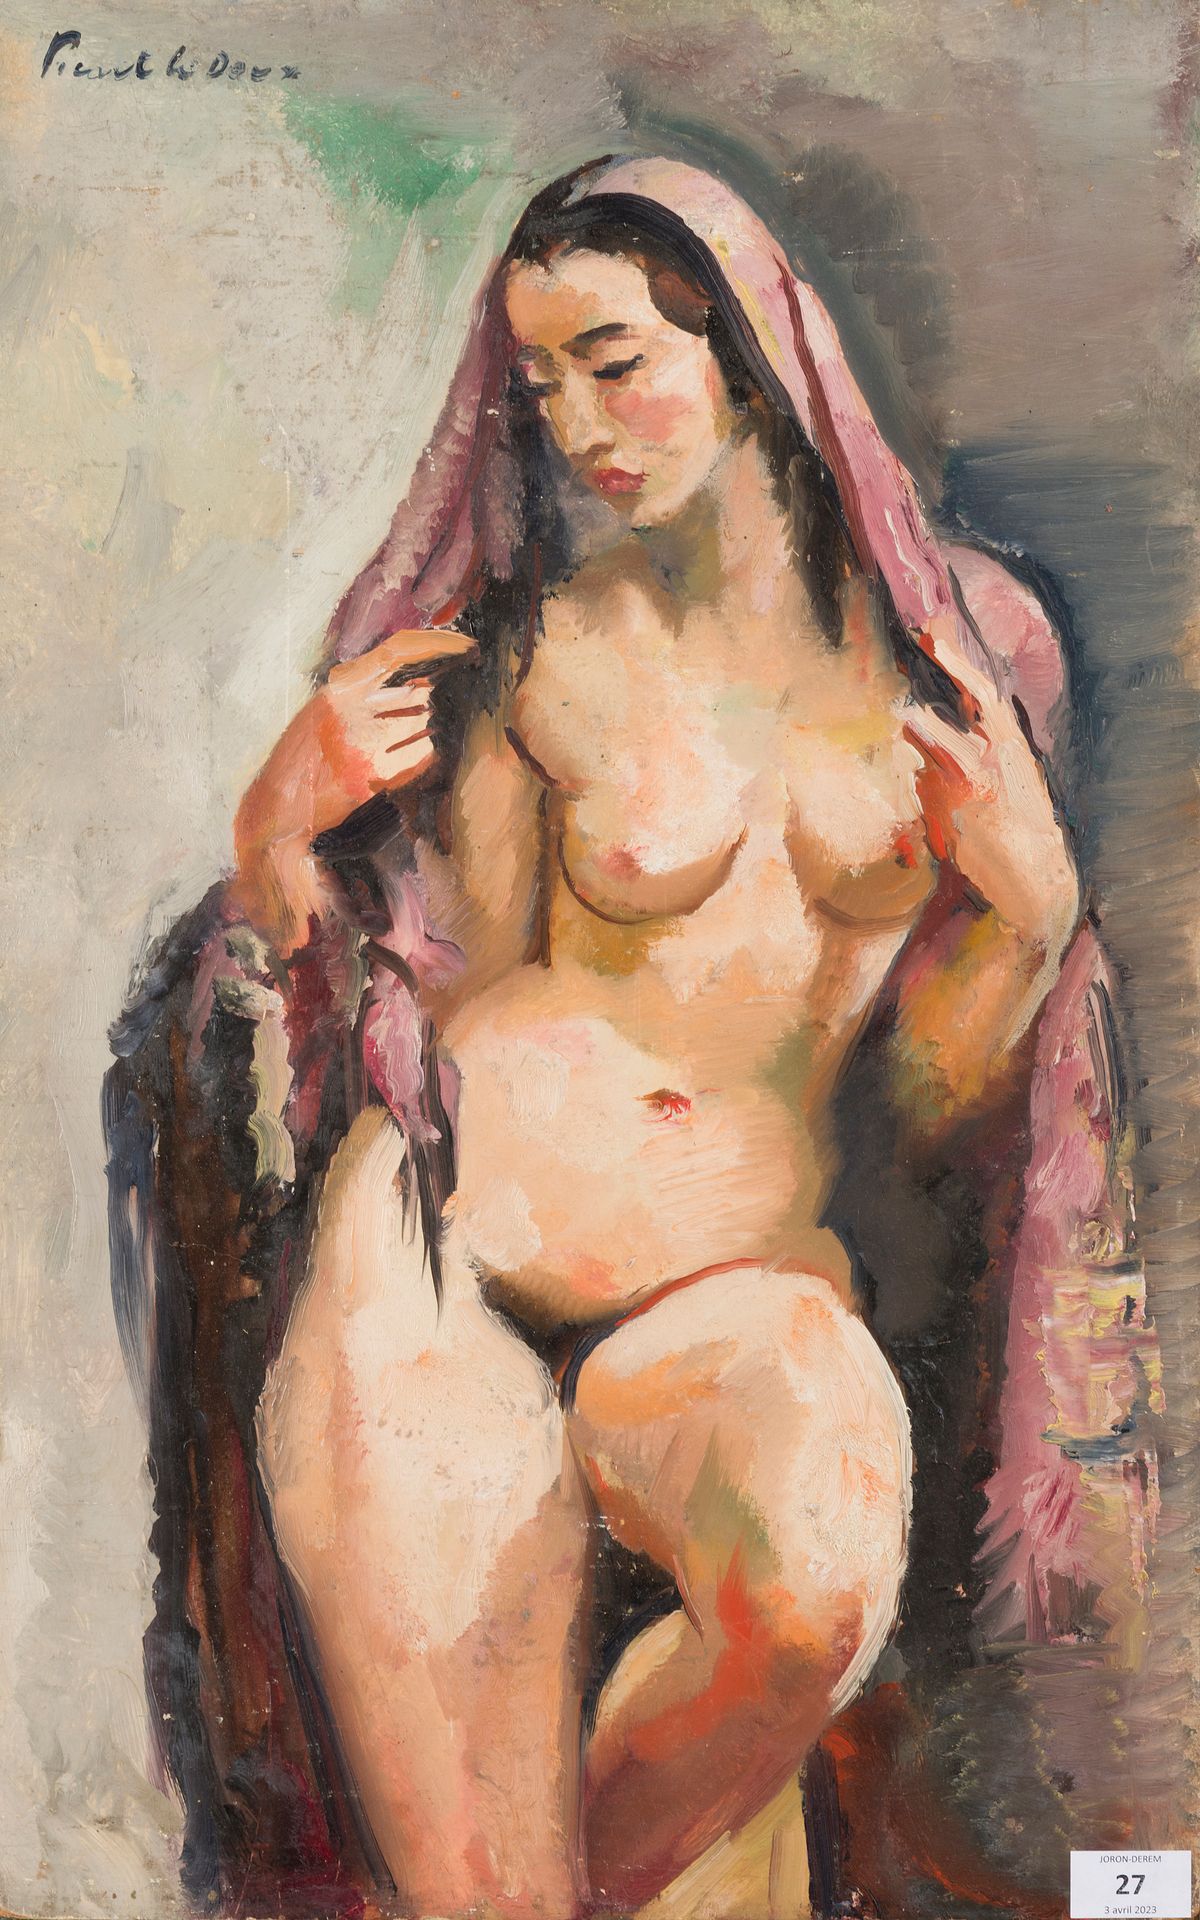 Null 夏尔-皮卡特-勒杜 (1881-1959)
带披肩的裸体，1950年
画板上的油画
左上方有签名
61 x 38 cm